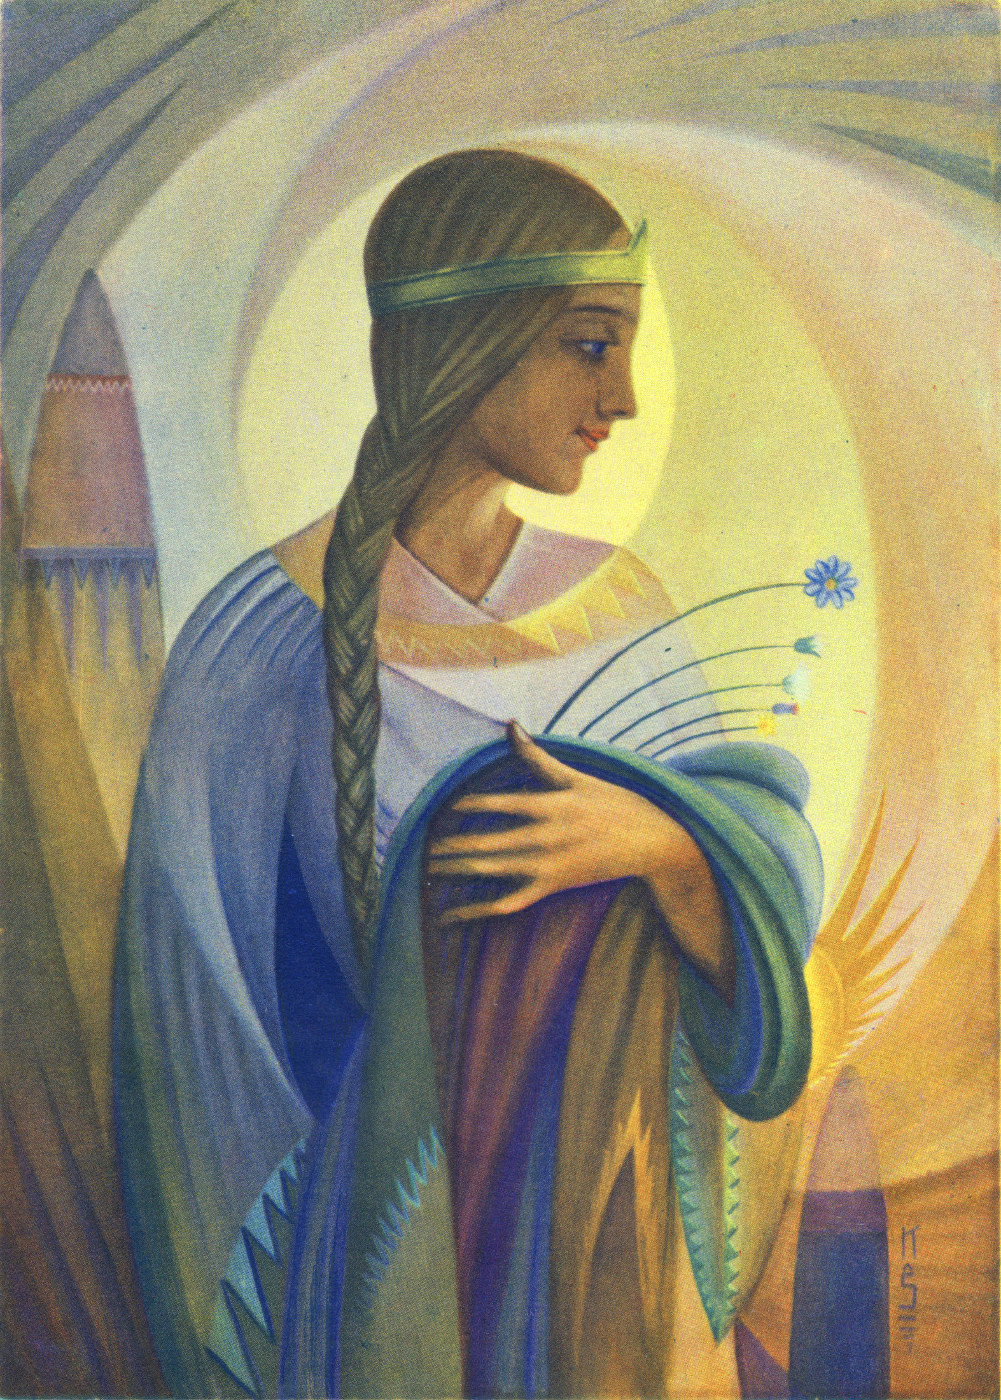    Казис Шимонис, живопись и книжная графика | Девушка с цветами 1936